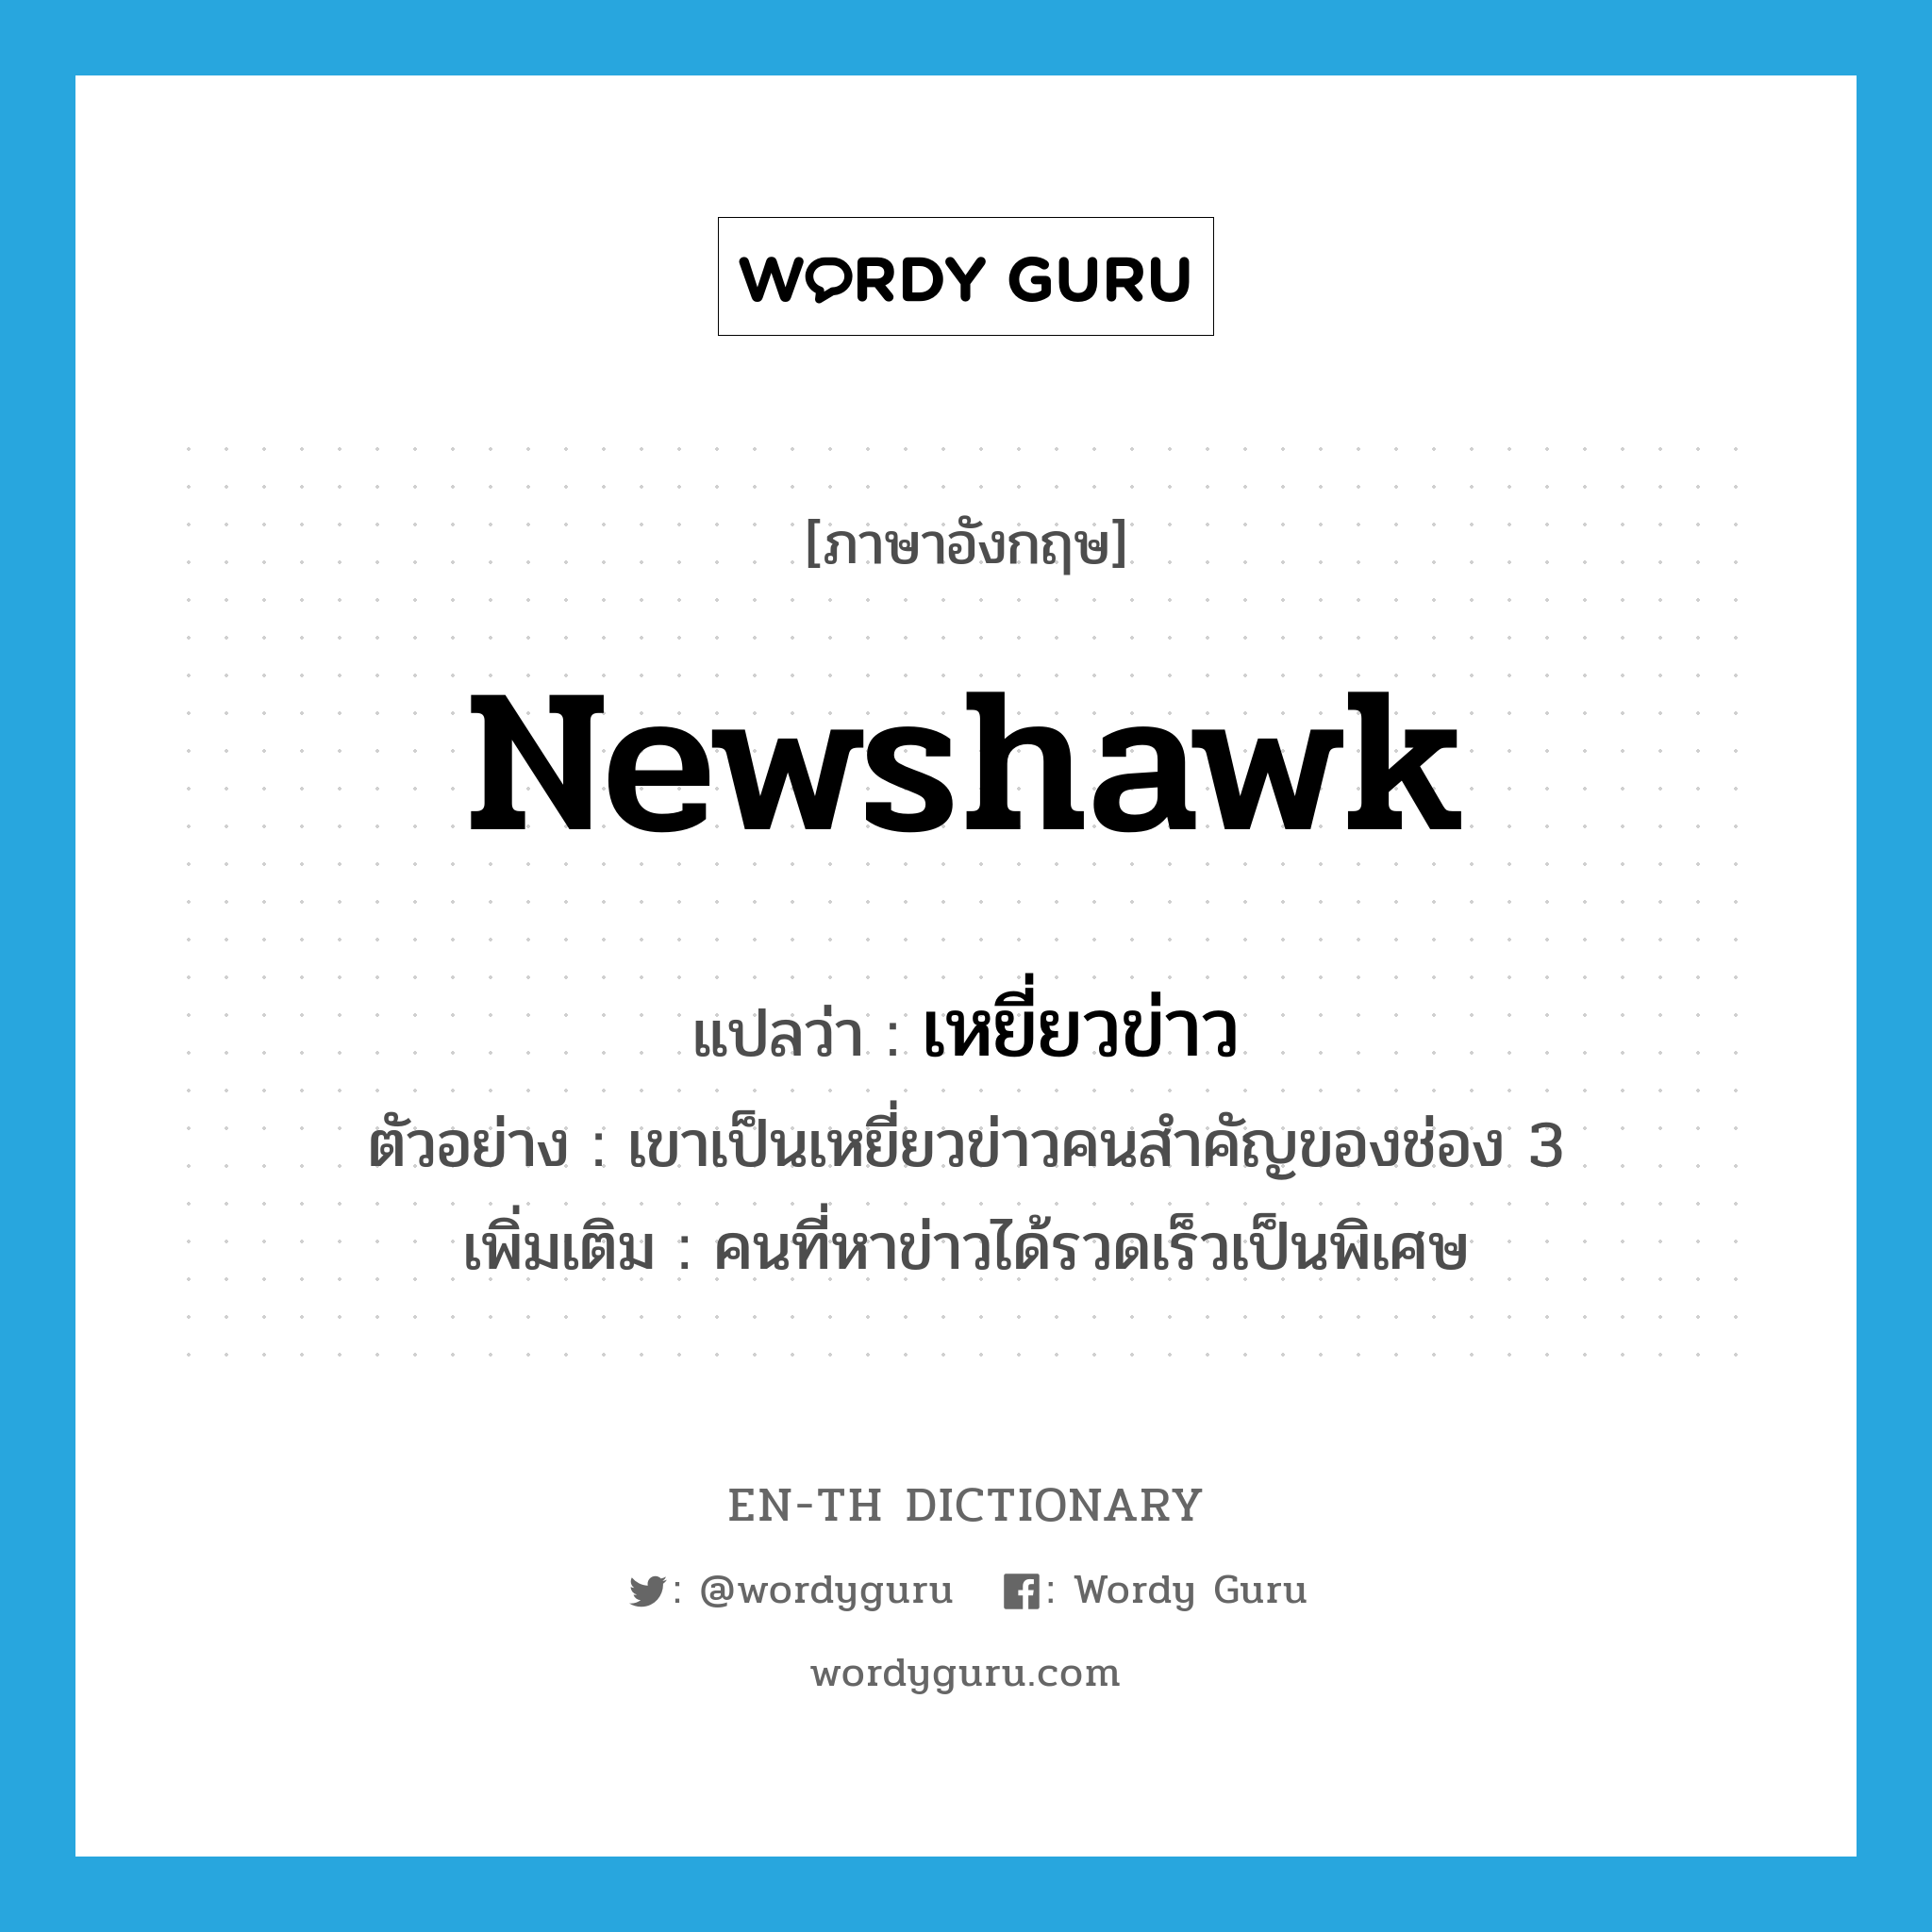 newshawk แปลว่า?, คำศัพท์ภาษาอังกฤษ newshawk แปลว่า เหยี่ยวข่าว ประเภท N ตัวอย่าง เขาเป็นเหยี่ยวข่าวคนสำคัญของช่อง 3 เพิ่มเติม คนที่หาข่าวได้รวดเร็วเป็นพิเศษ หมวด N